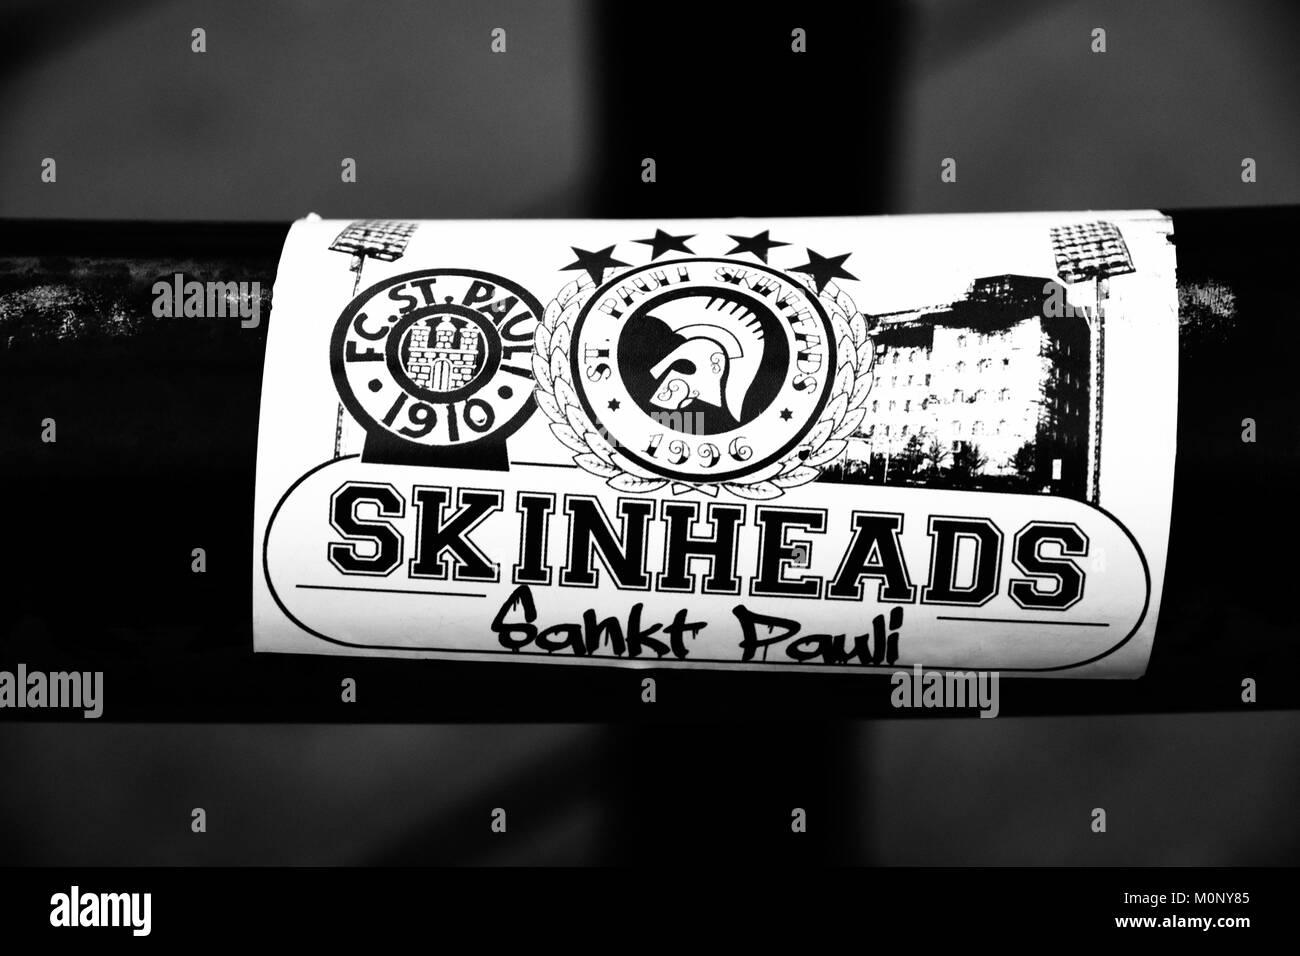 Des skinheads de Sankt Pauli, Hambourg, Allemagne ont appliqué leur sticker lors de la visite de la jeunesse en Amérique Mura du district d'Osaka au Japon Banque D'Images